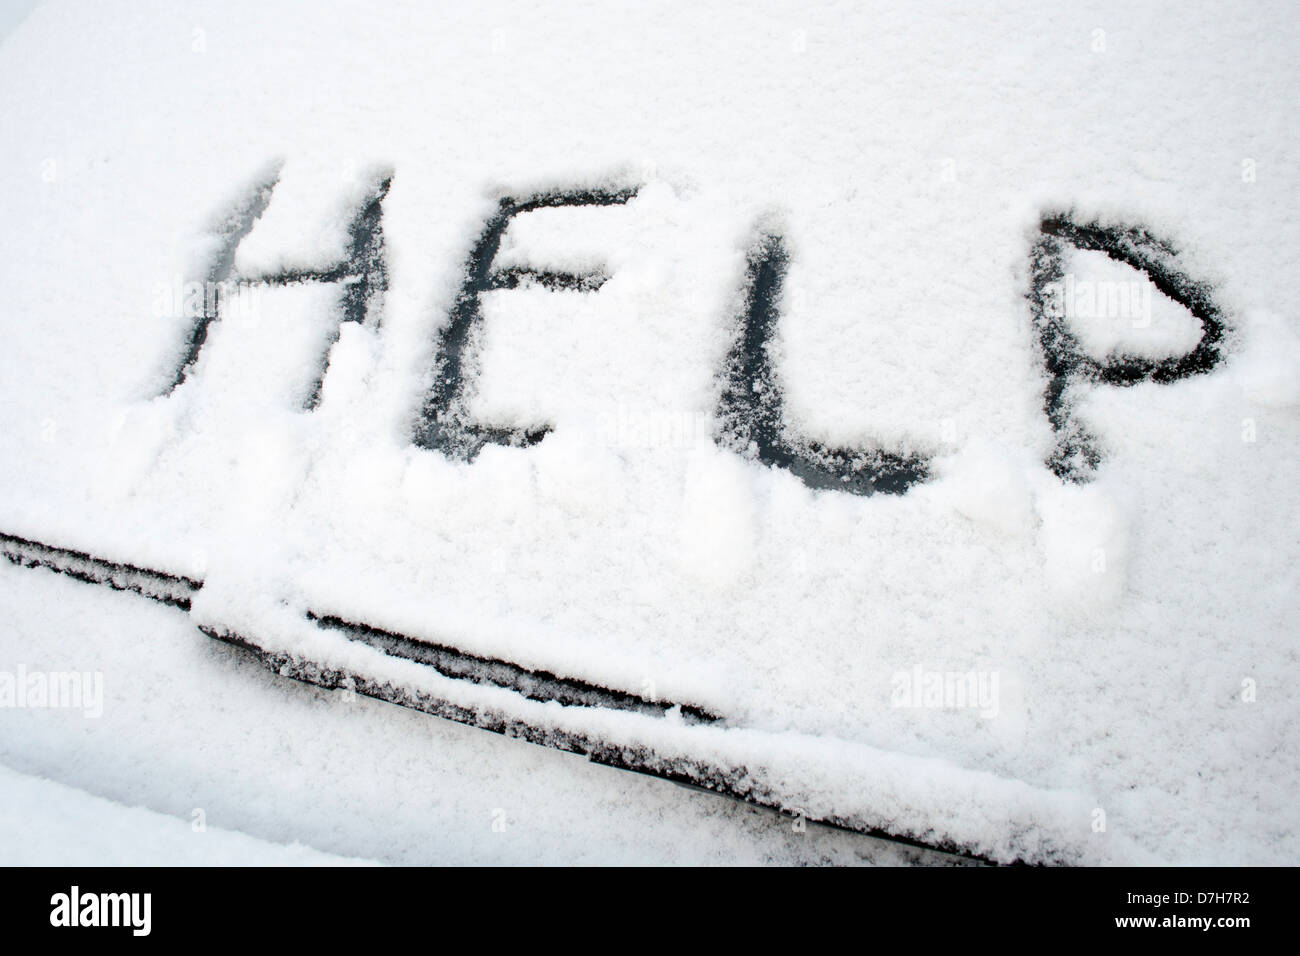 Aide mot écrit sur l'avant pare-brise de voiture couvert par neige mouillée Banque D'Images